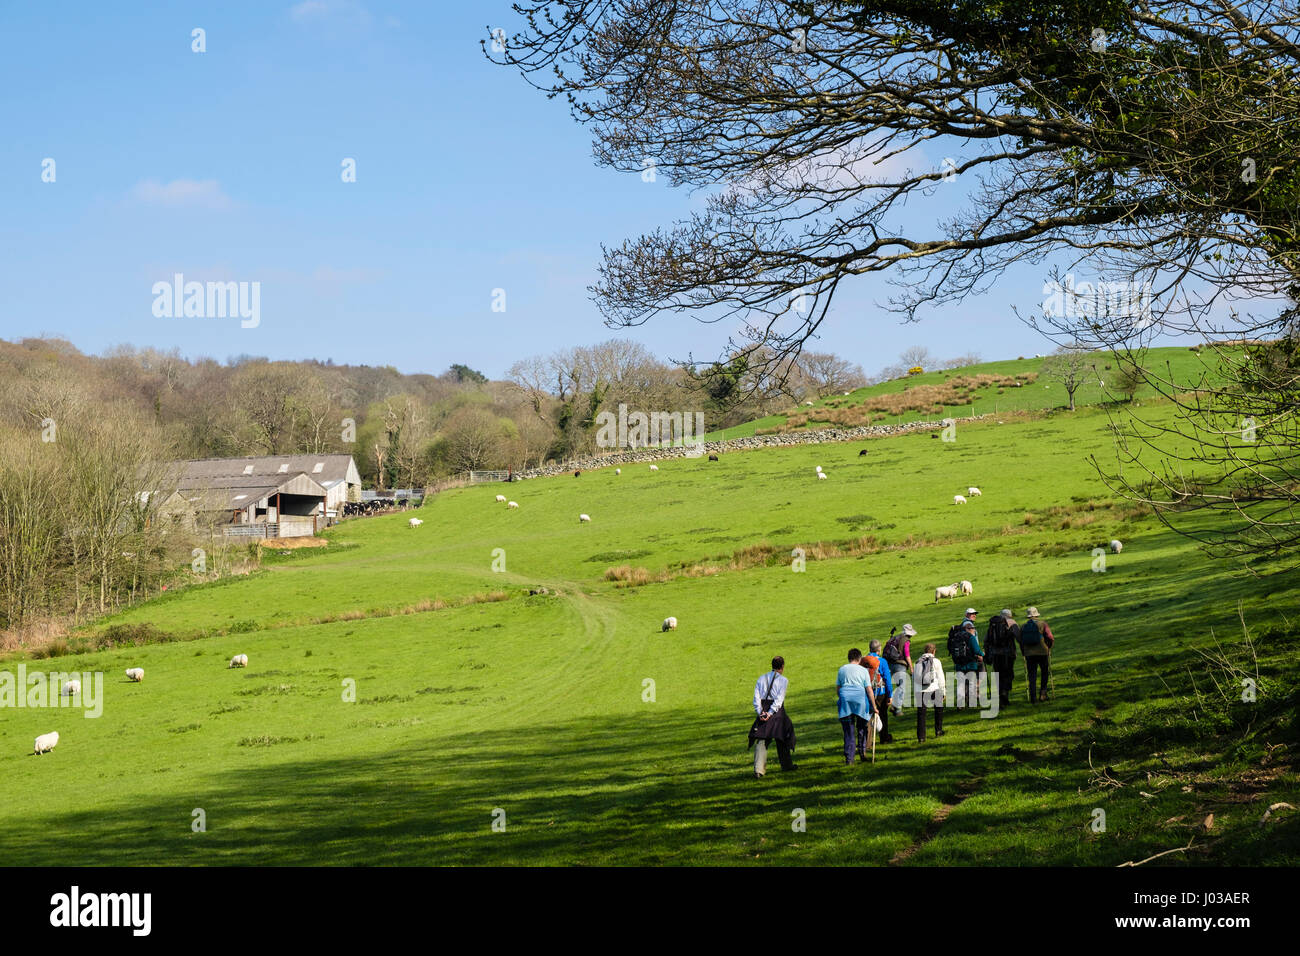 Wanderer-Gruppe der Wanderer auf ein Land zu Fuß, zu Fuß durch Feld auf Schaf-Farm in Snowdonia Landschaft. Gwynedd Nordwales UK Großbritannien Stockfoto